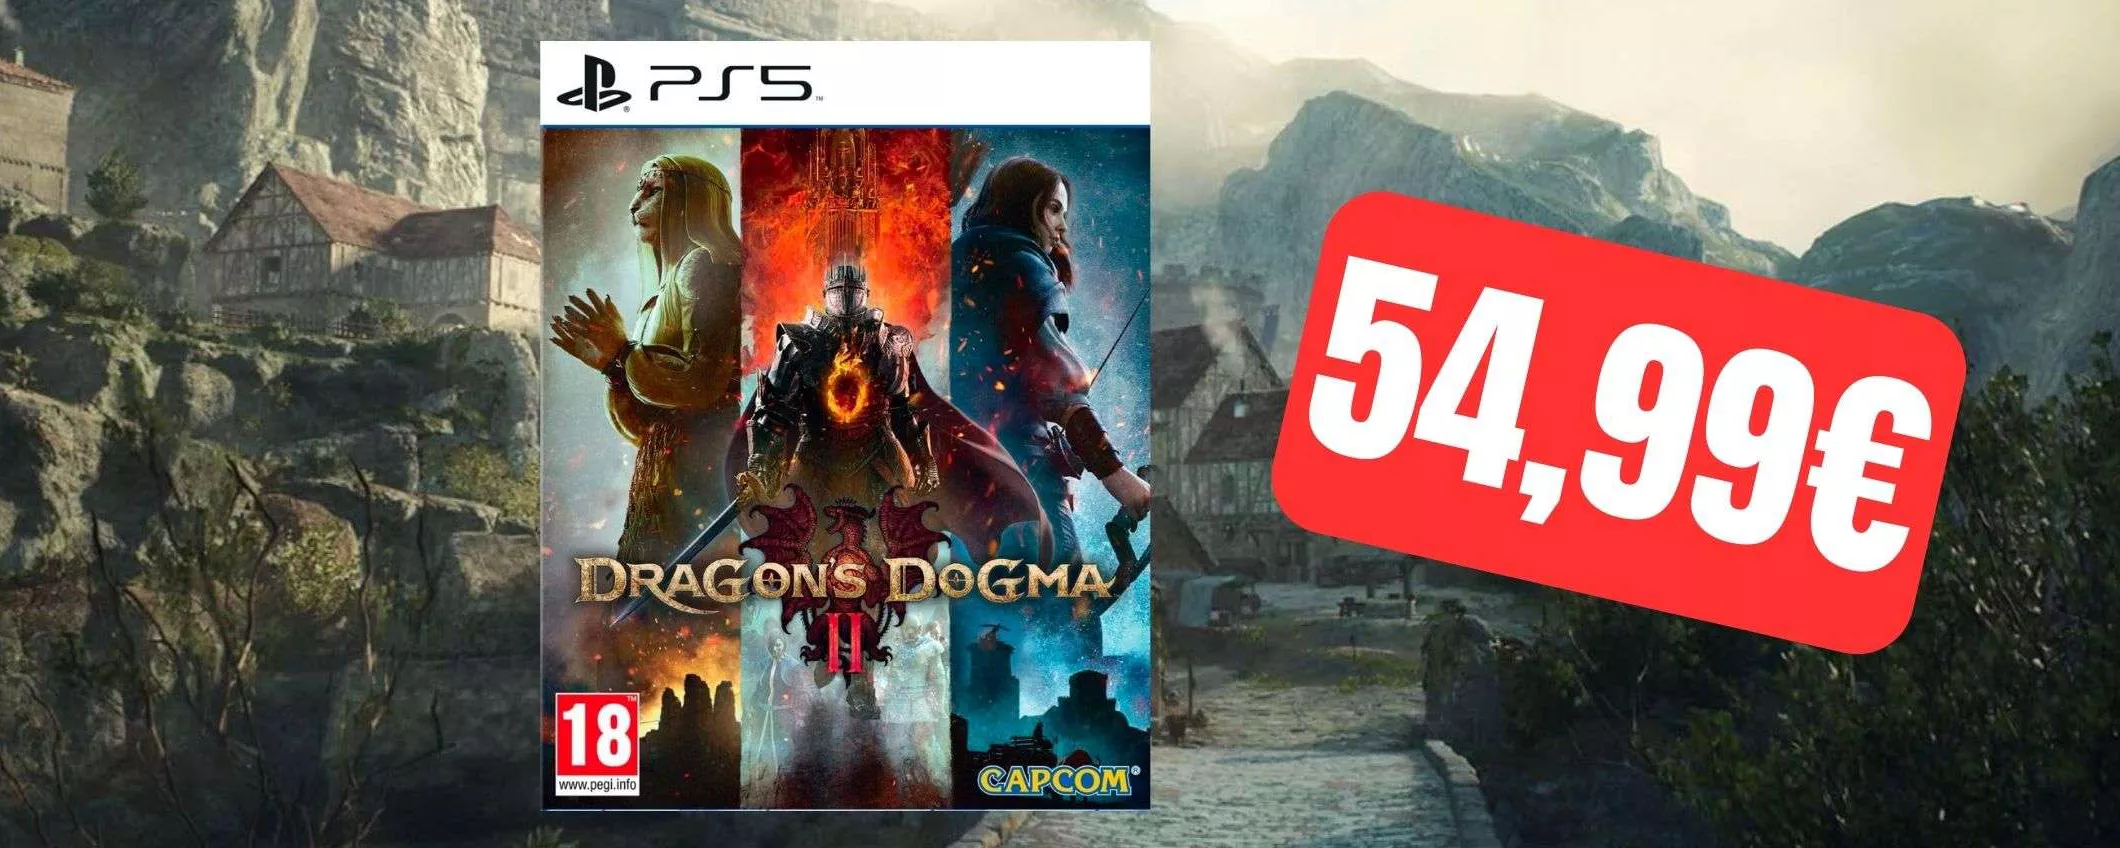 Dragon's Dogma 2: prenotalo ad un prezzo ASSURDO su eBay